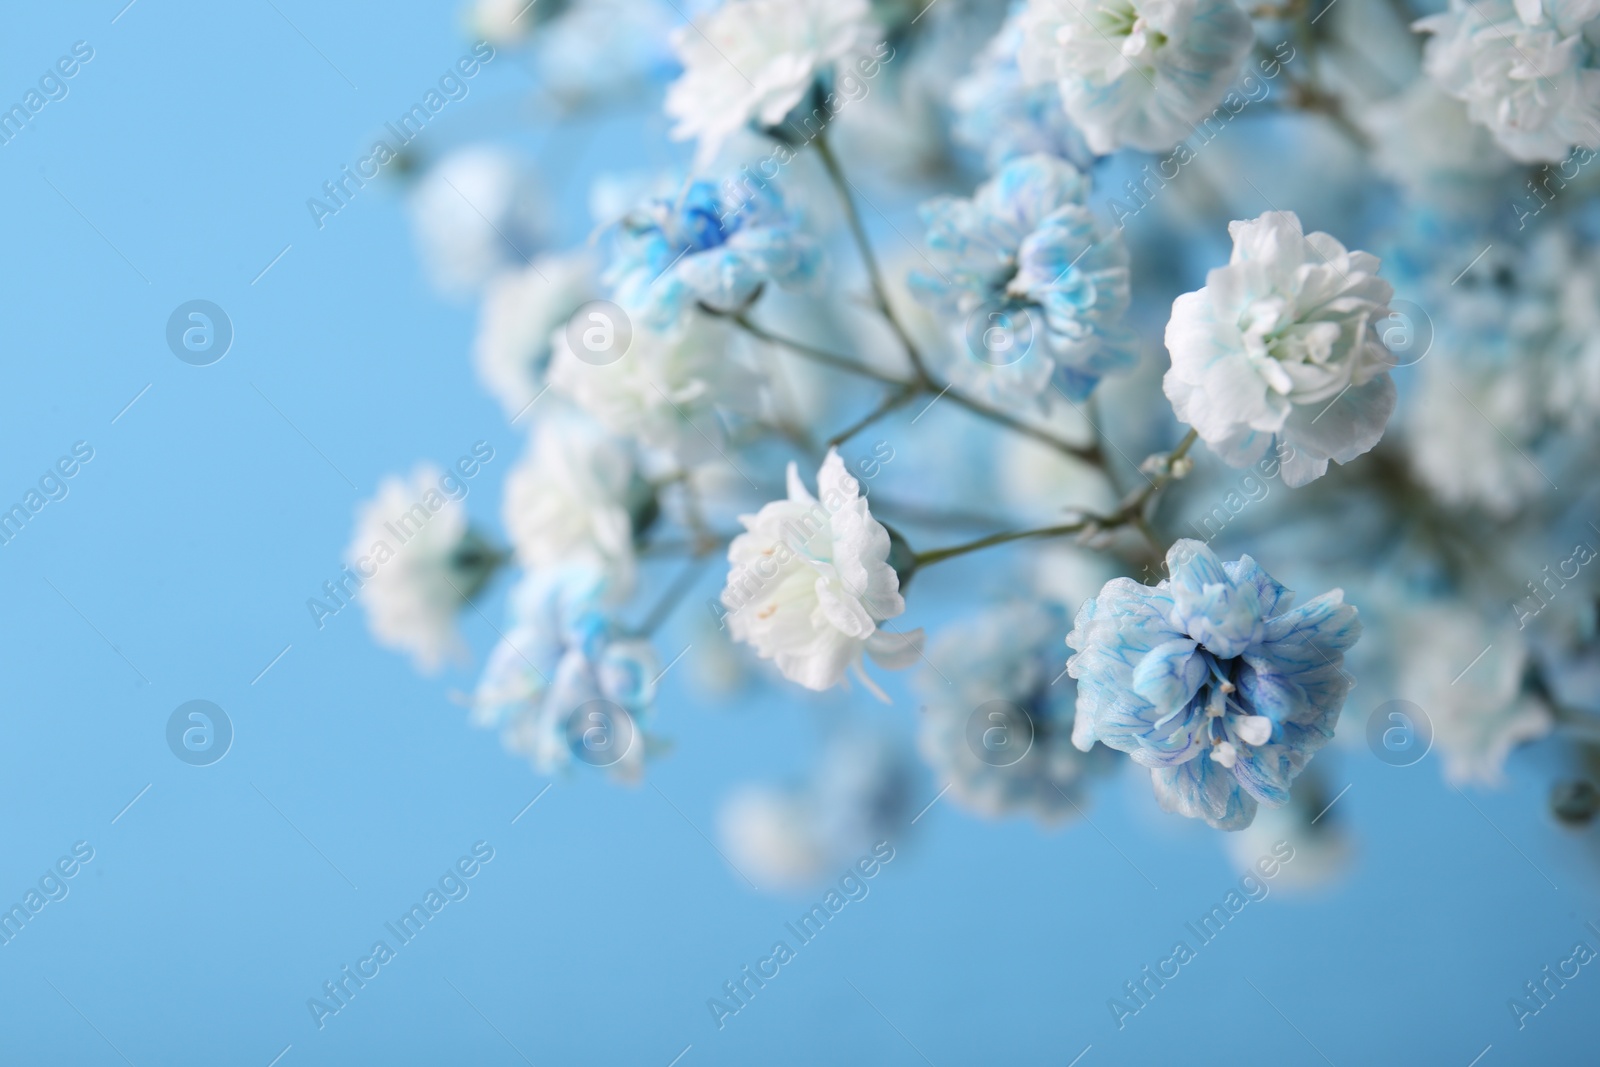 Photo of Many beautiful dyed gypsophila flowers on light blue background, closeup